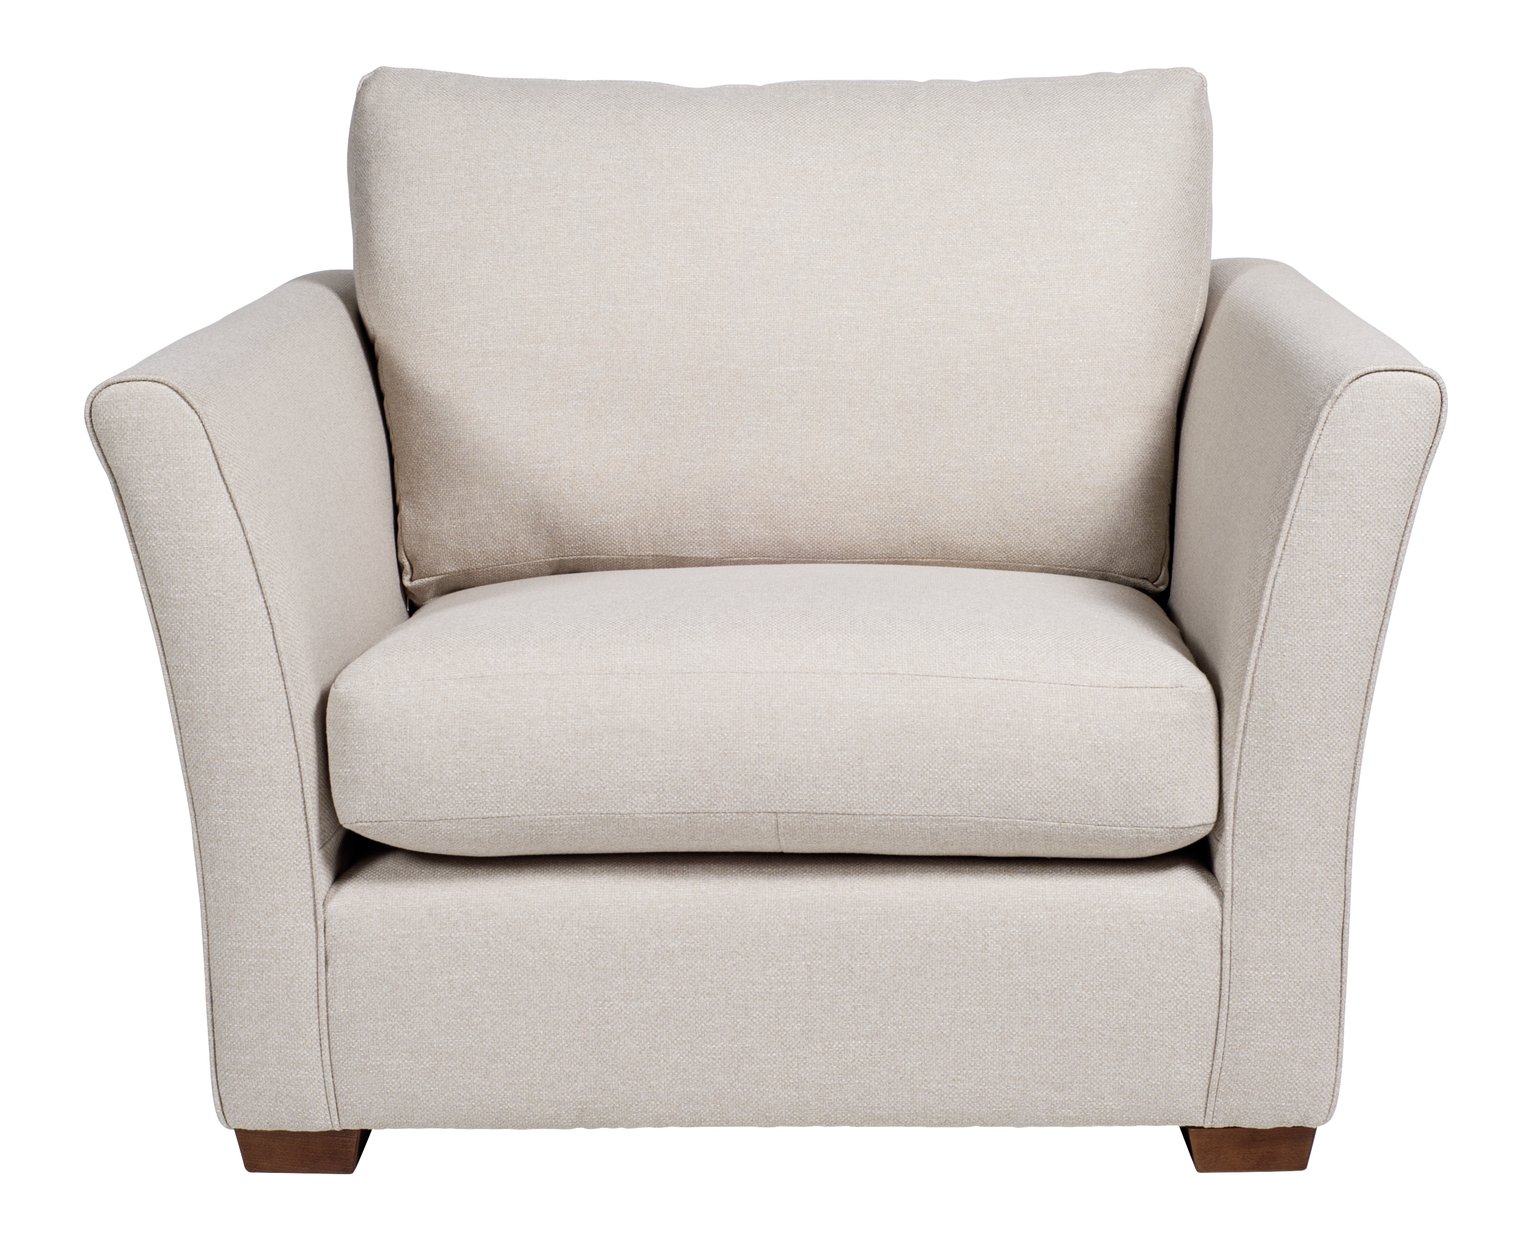 Argos Home Dawson Fabric Cuddle Chair - Natural